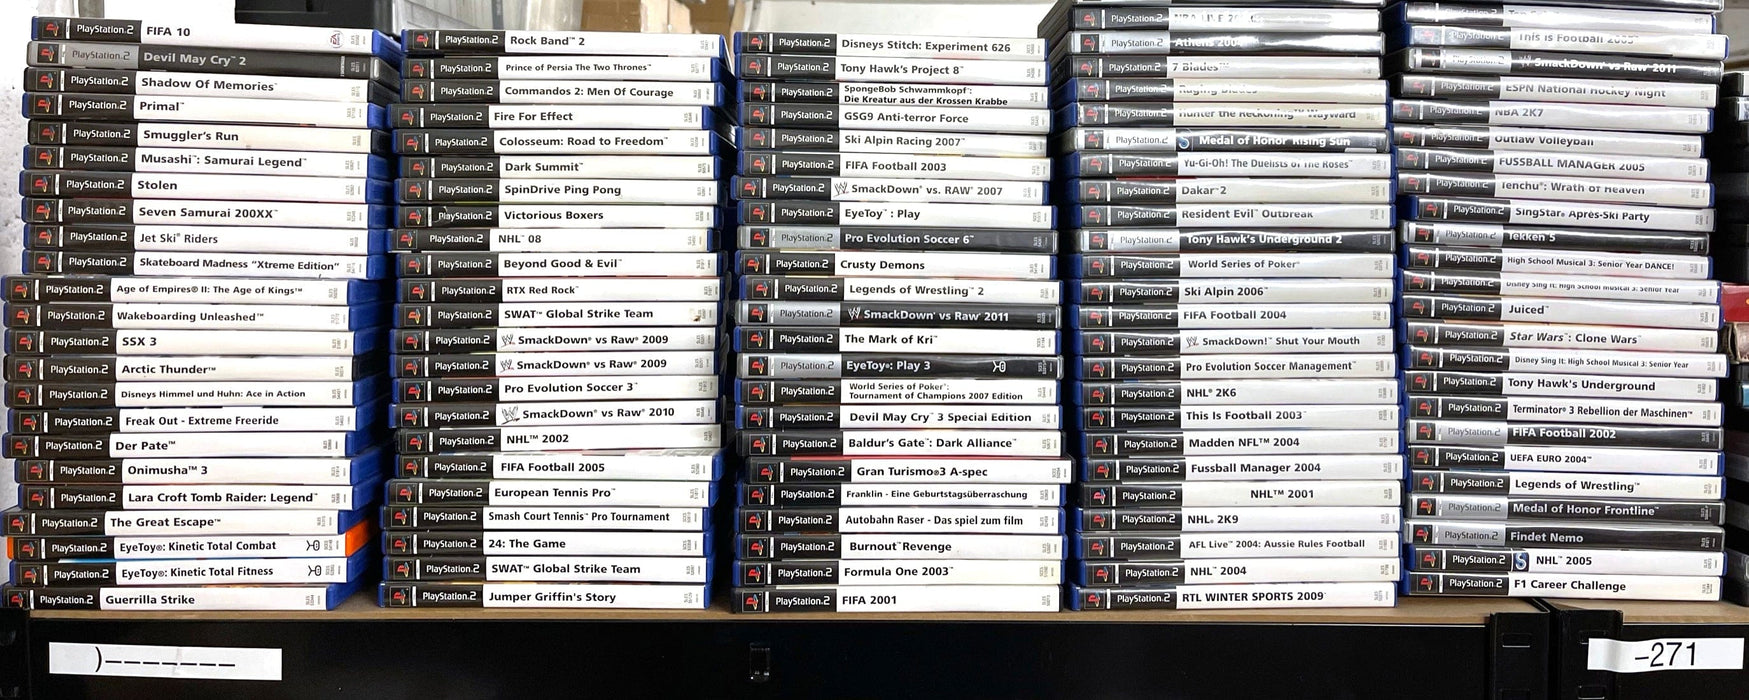 Glaciergames PlayStation 2 Game F1 Career Challenge PlayStation 2 (Nr.271)